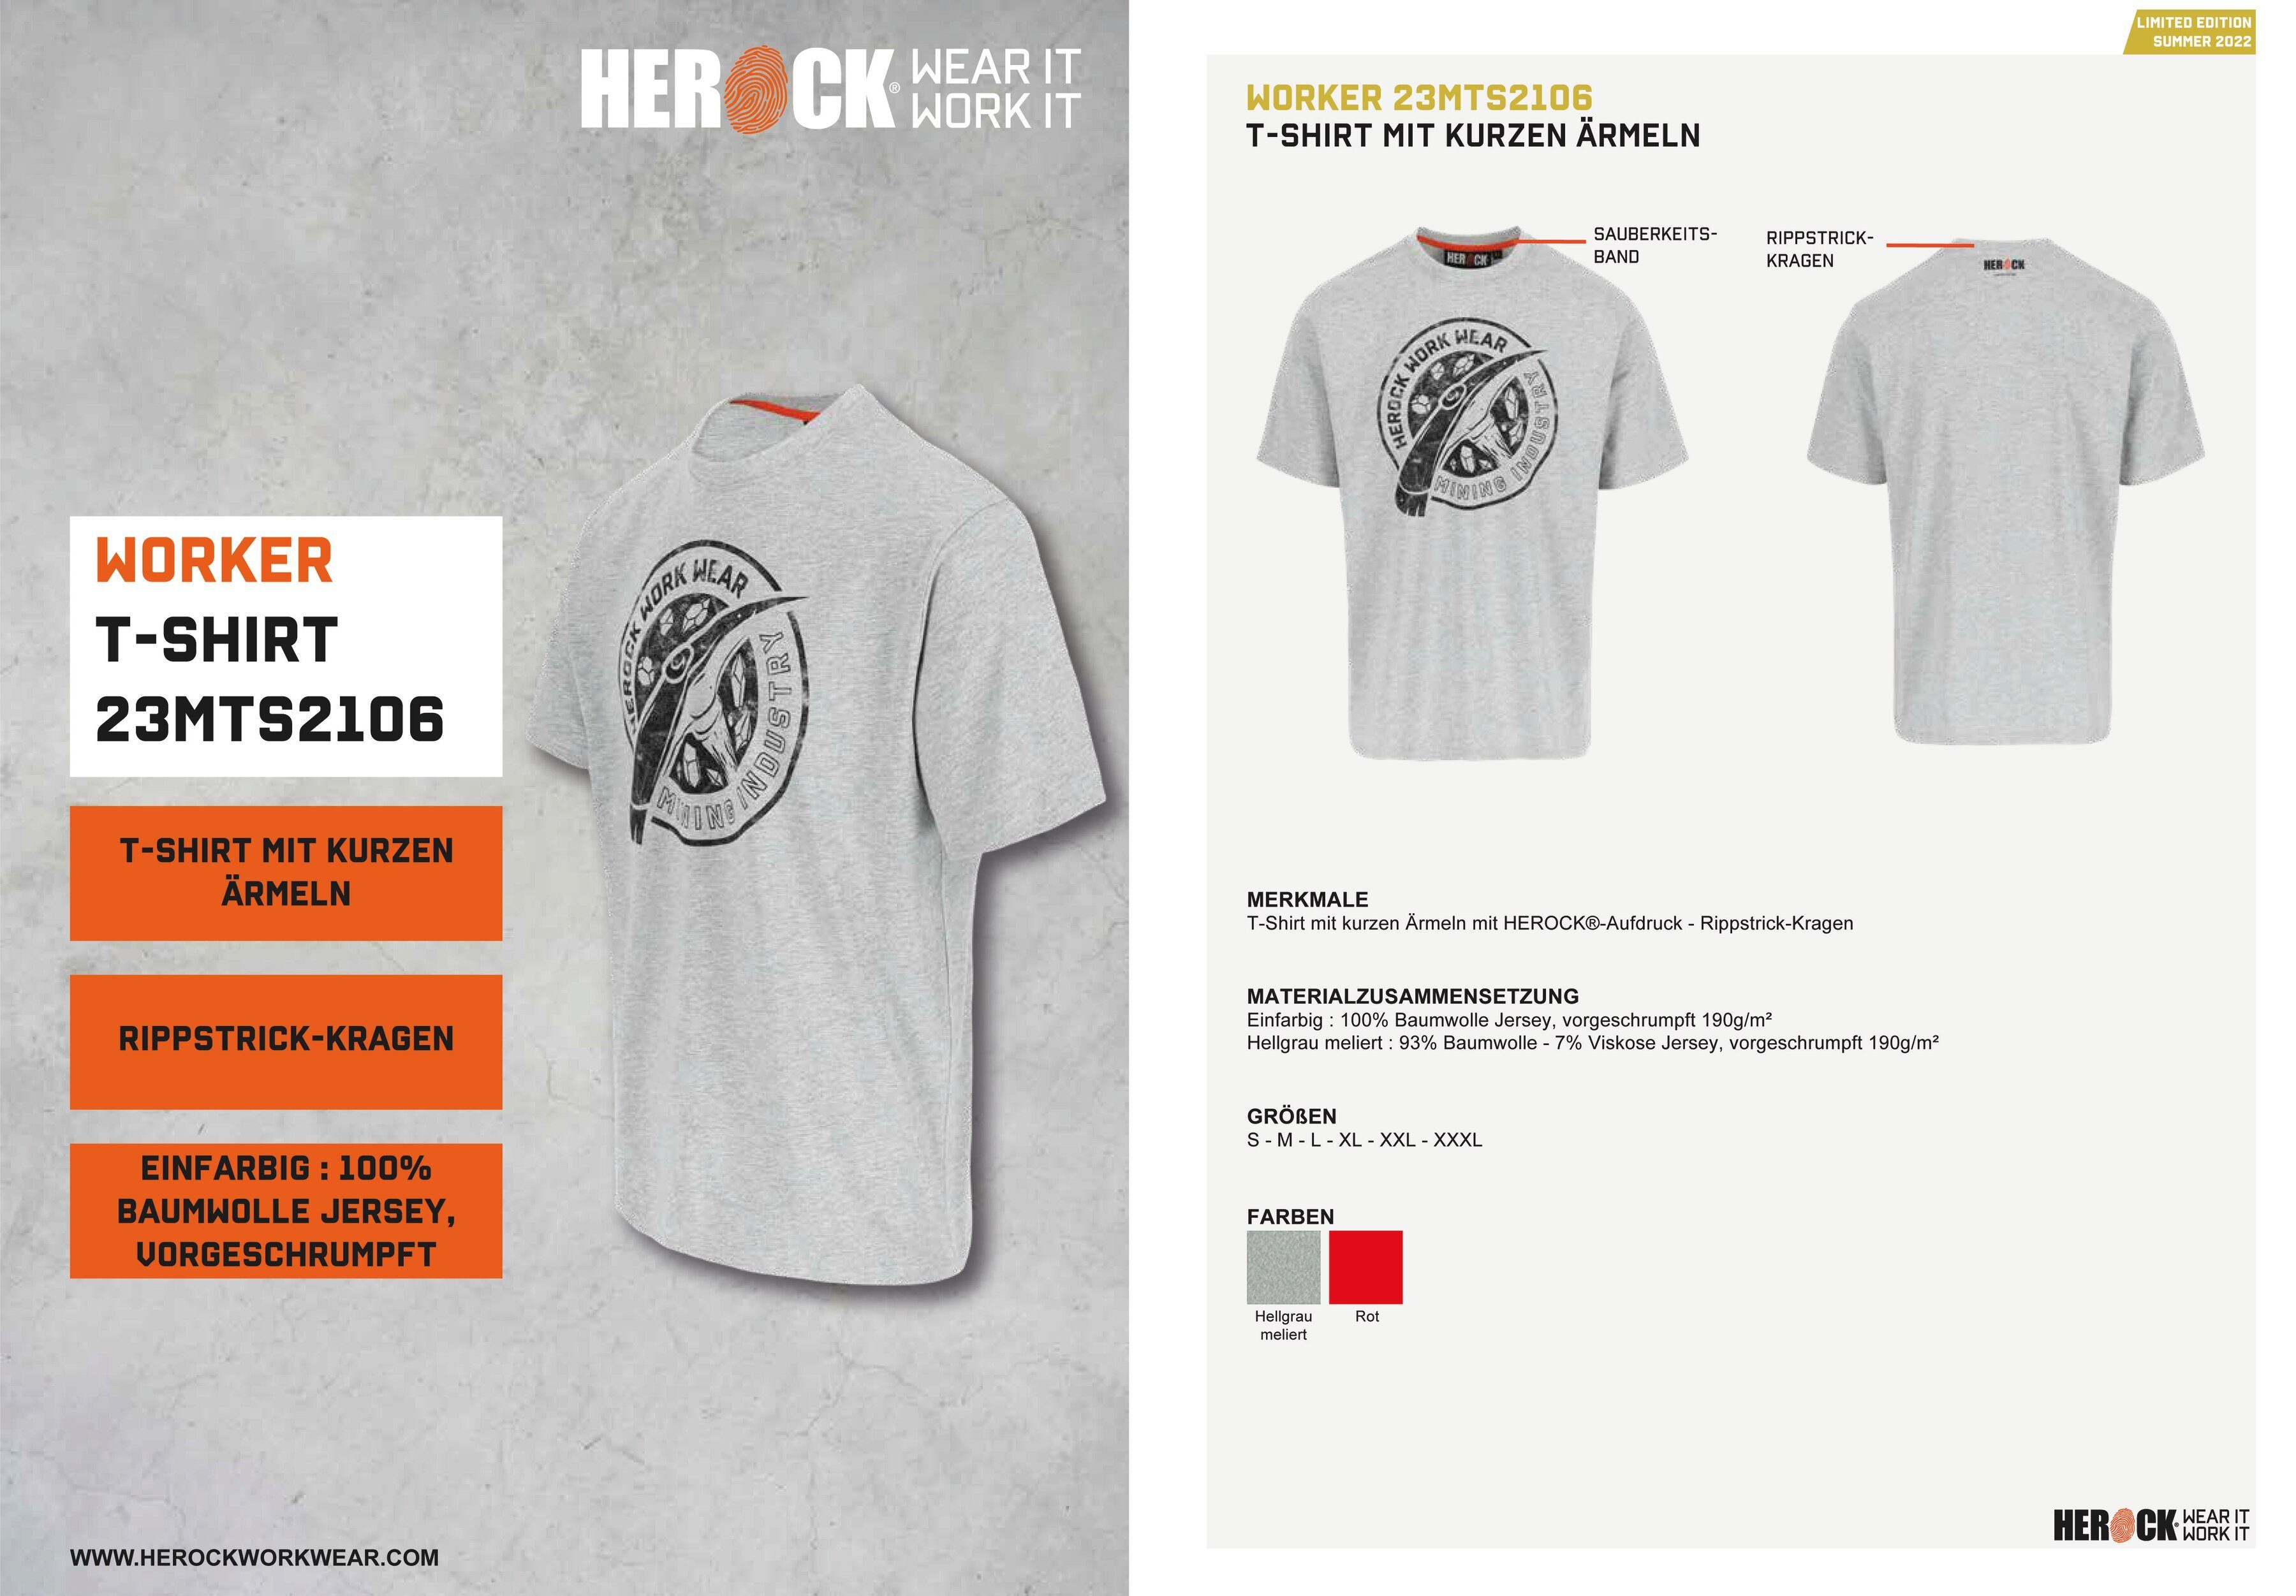 Herock T-Shirt Worker Limited verschiedene Farben Edition, in hellgrau erhältlich